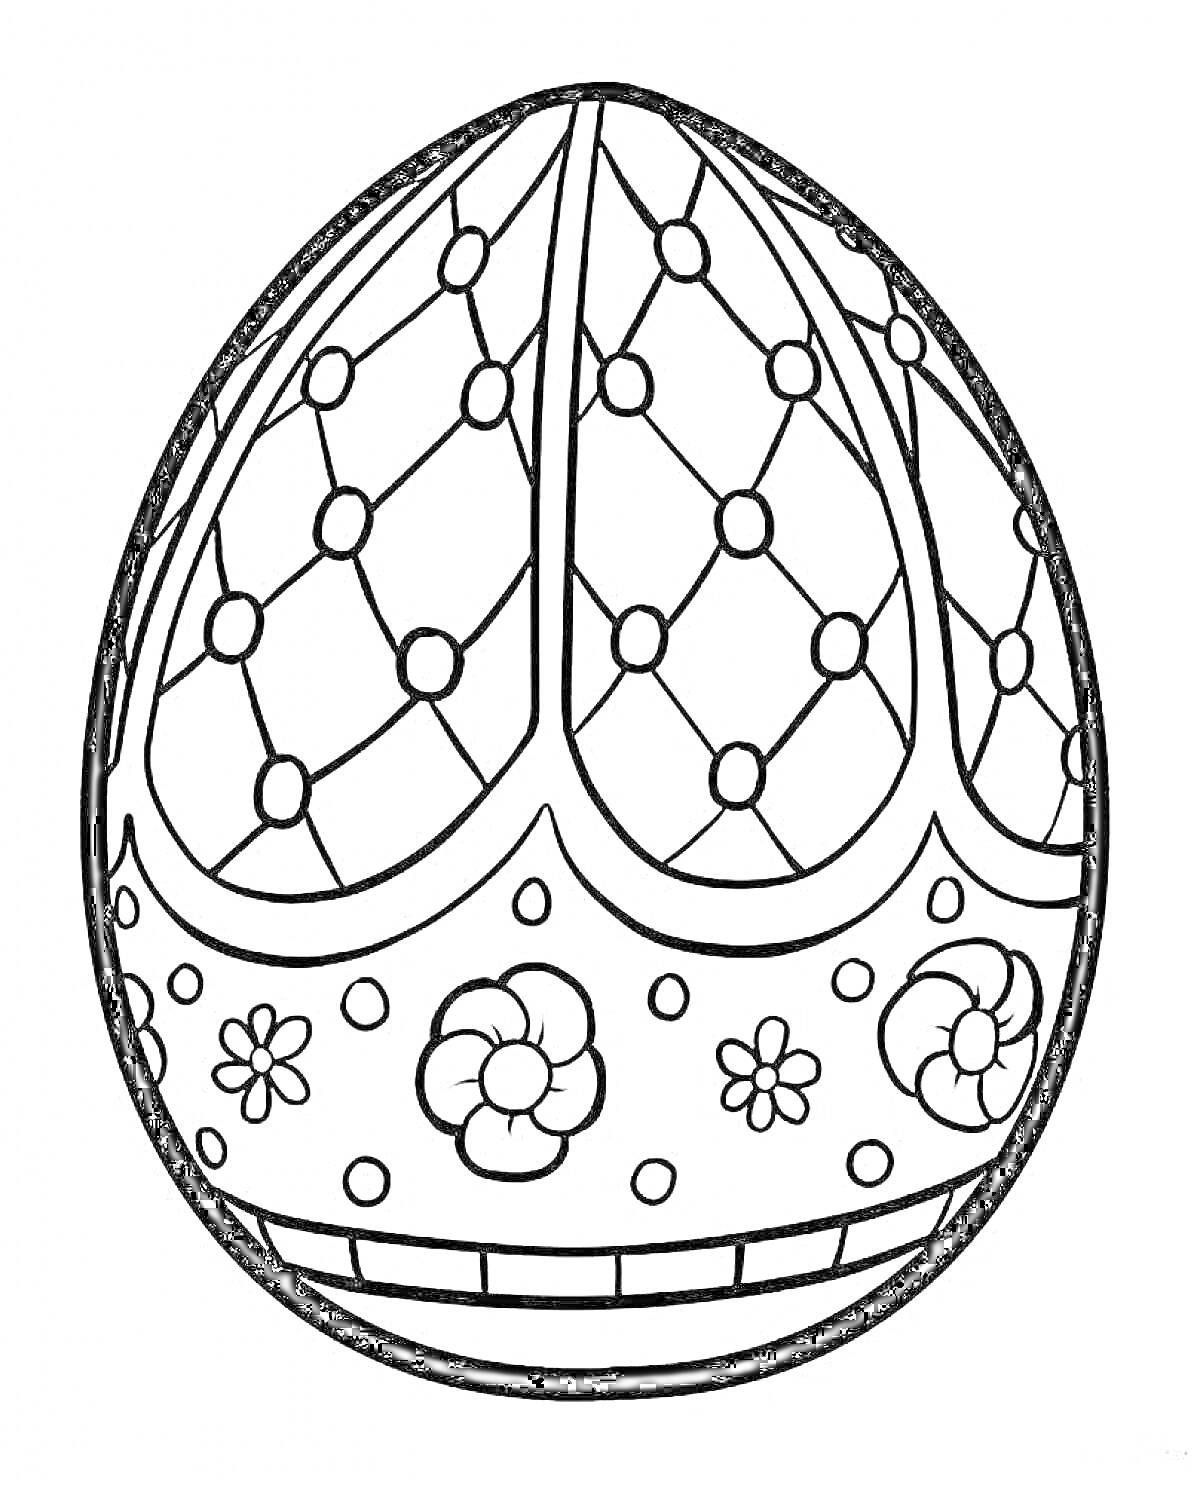 Раскраска Яйцо с узорами, сетка с ромбами и цветы